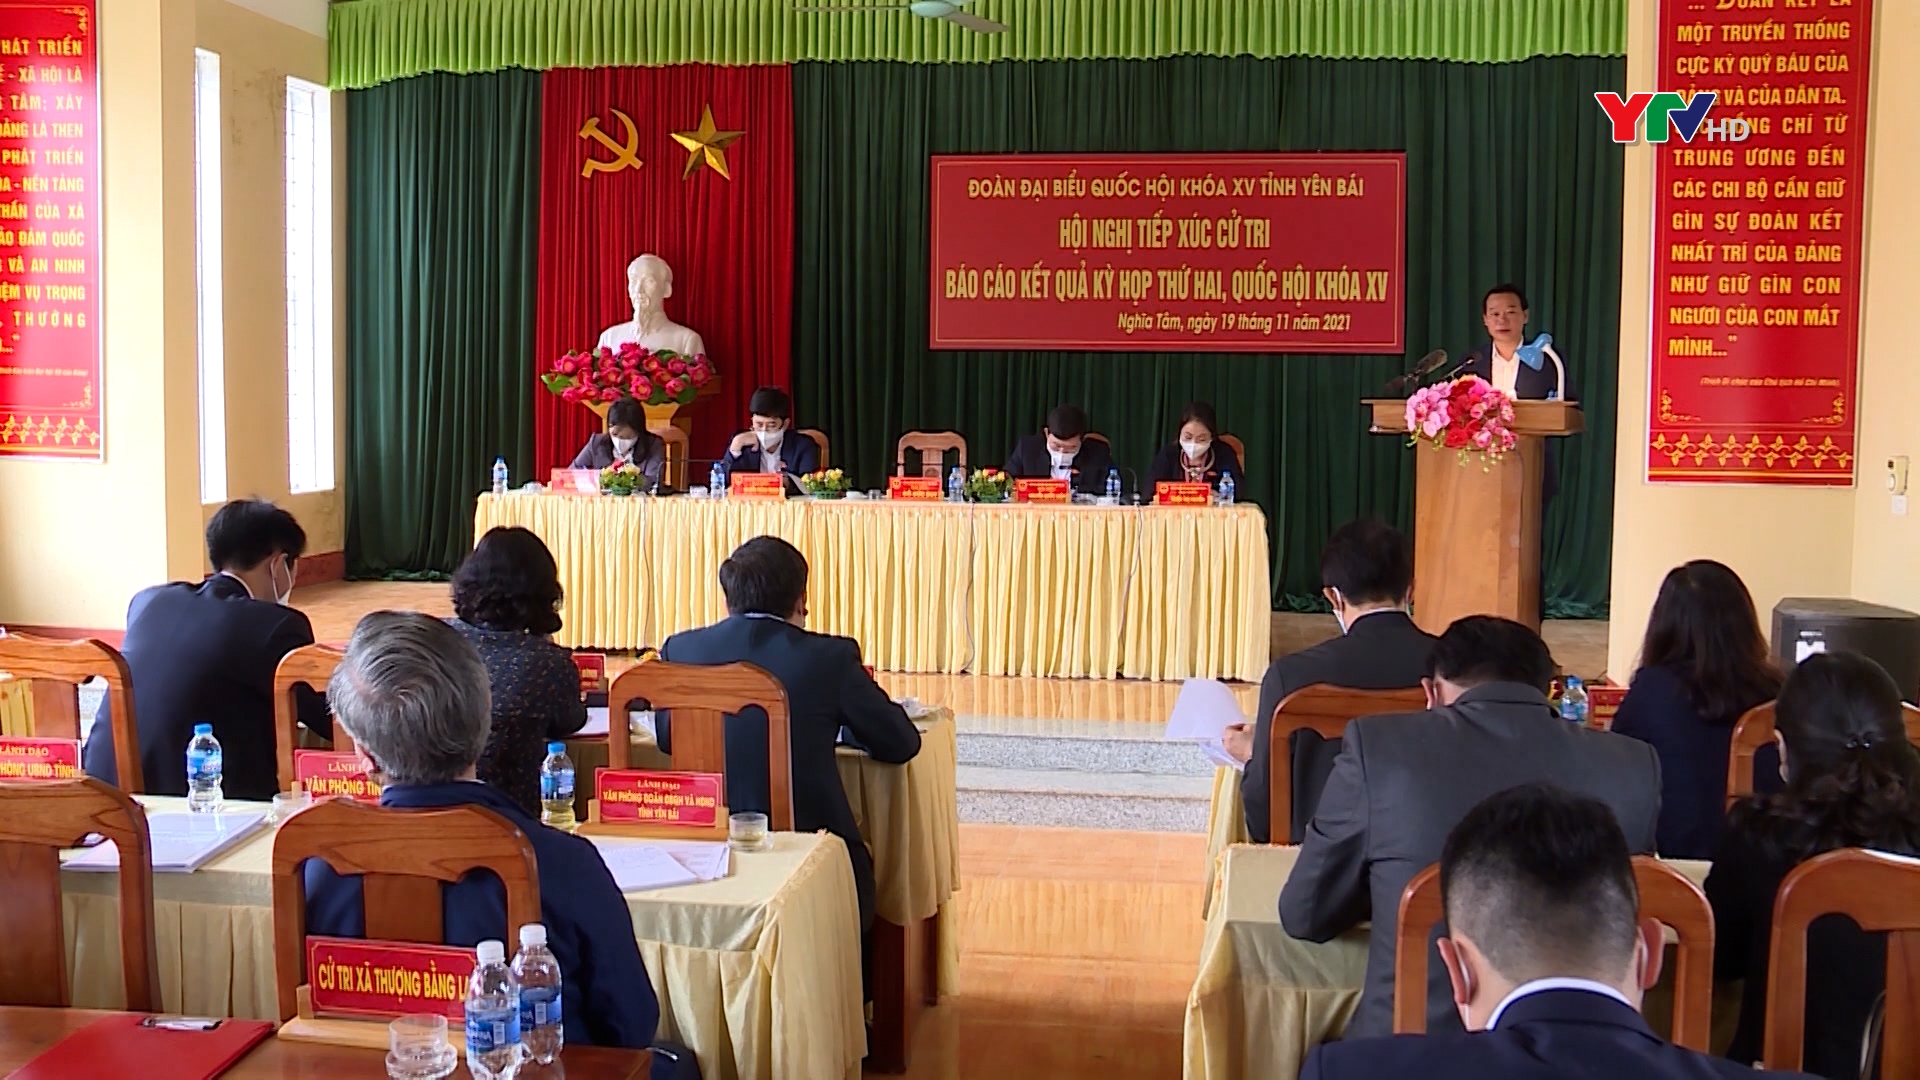 Đồng chí Đỗ Đức Duy - Bí thư Tỉnh ủy, Trưởng đoàn ĐBQH tỉnh tiếp xúc cử tri huyện Văn Chấn